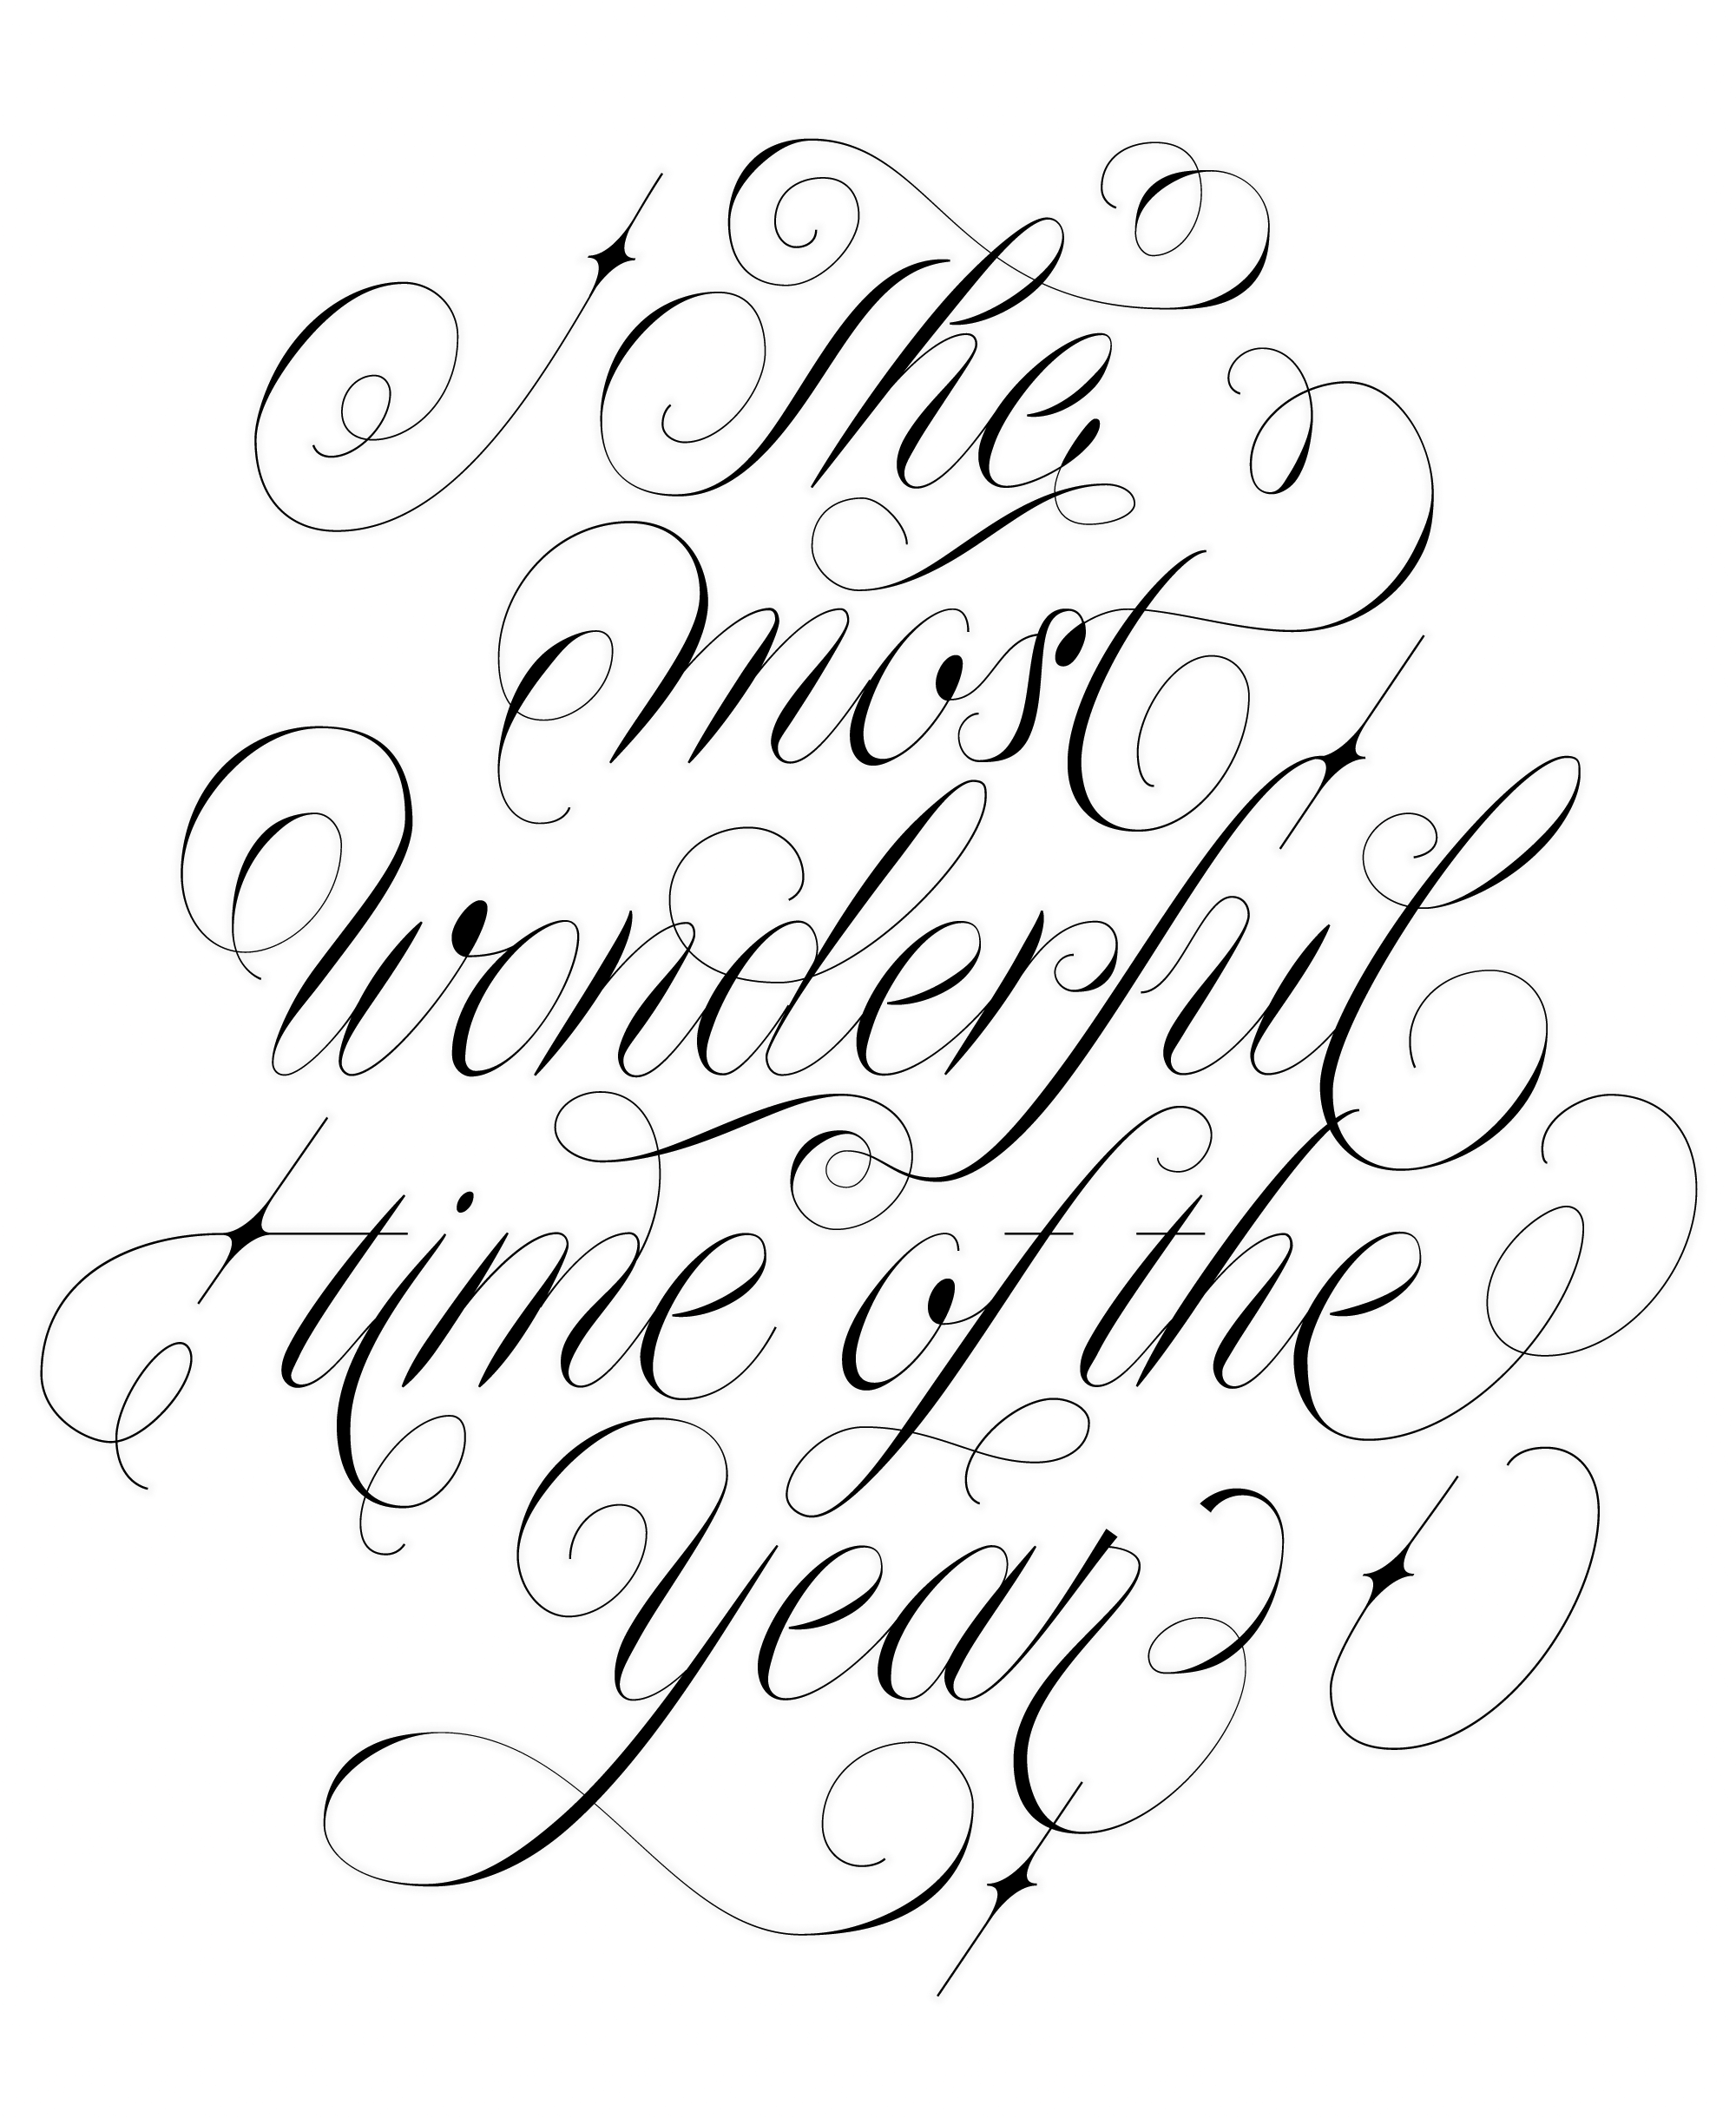 Ein Schriftzug (schwarz auf weiß) mit dem englischen Wortlaut: The Most Wonderful Time Of The Year (Die schönste Zeit des Jahres), in einer verzierten Schreibschrift.